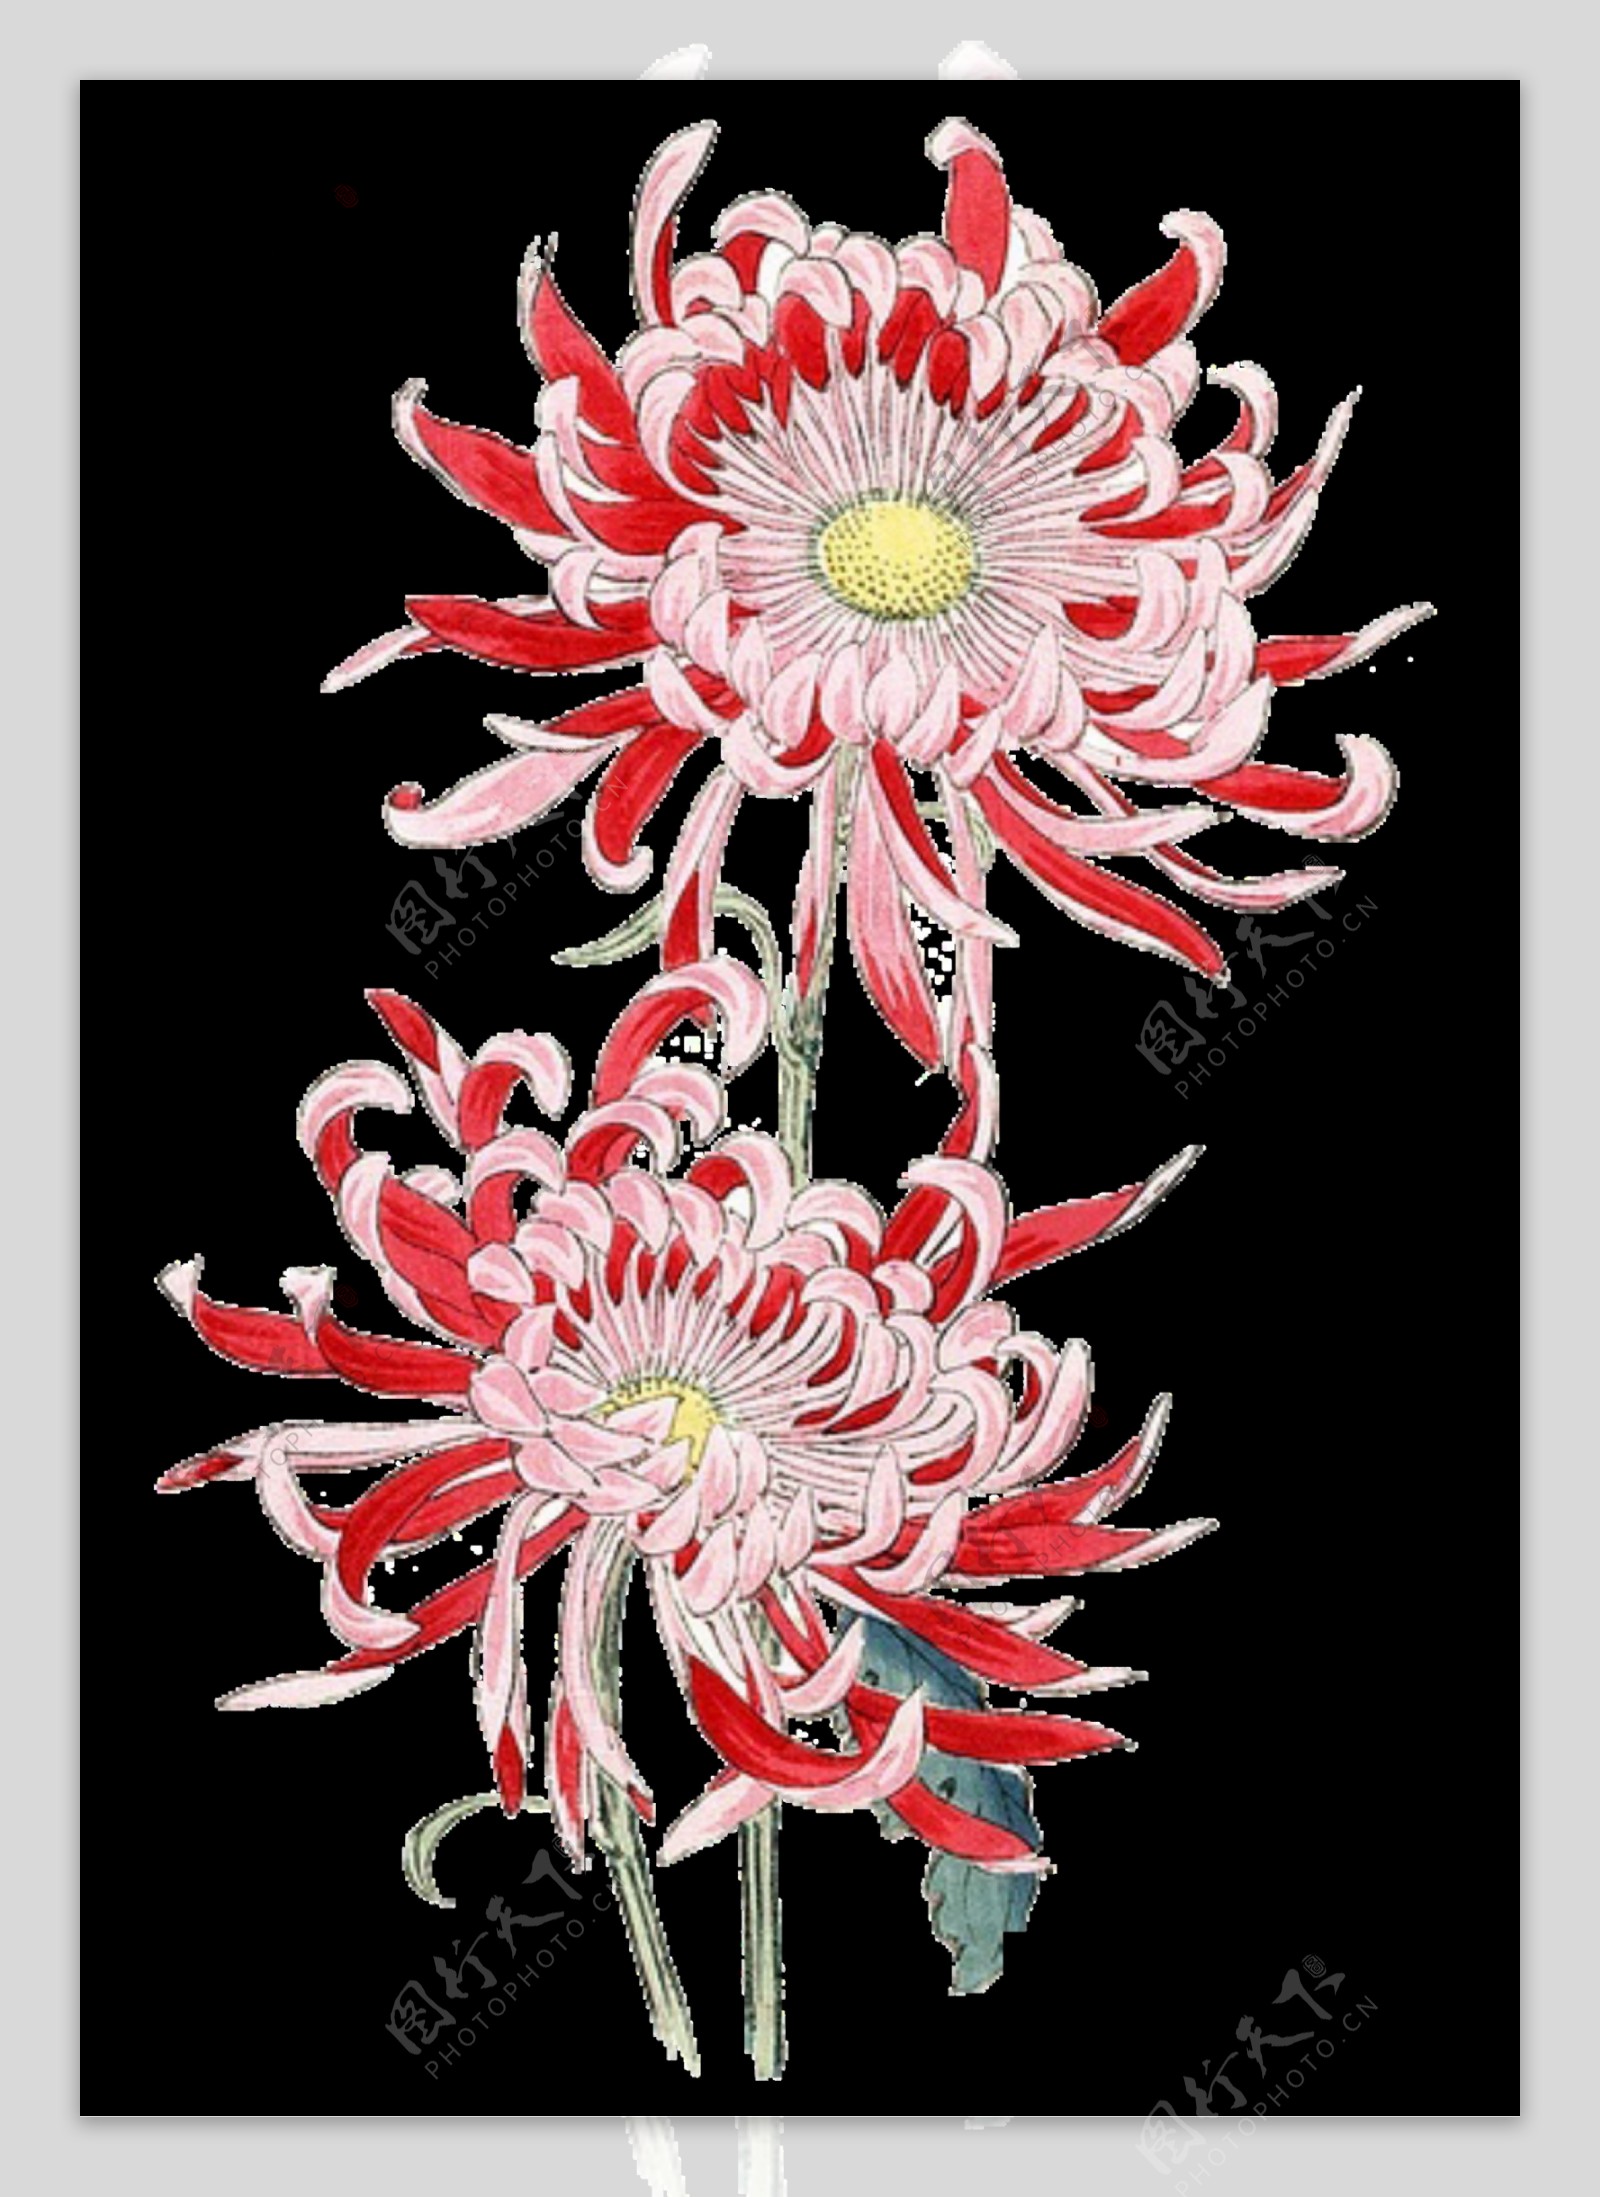 美丽鲜红色花朵手绘菊花装饰元素